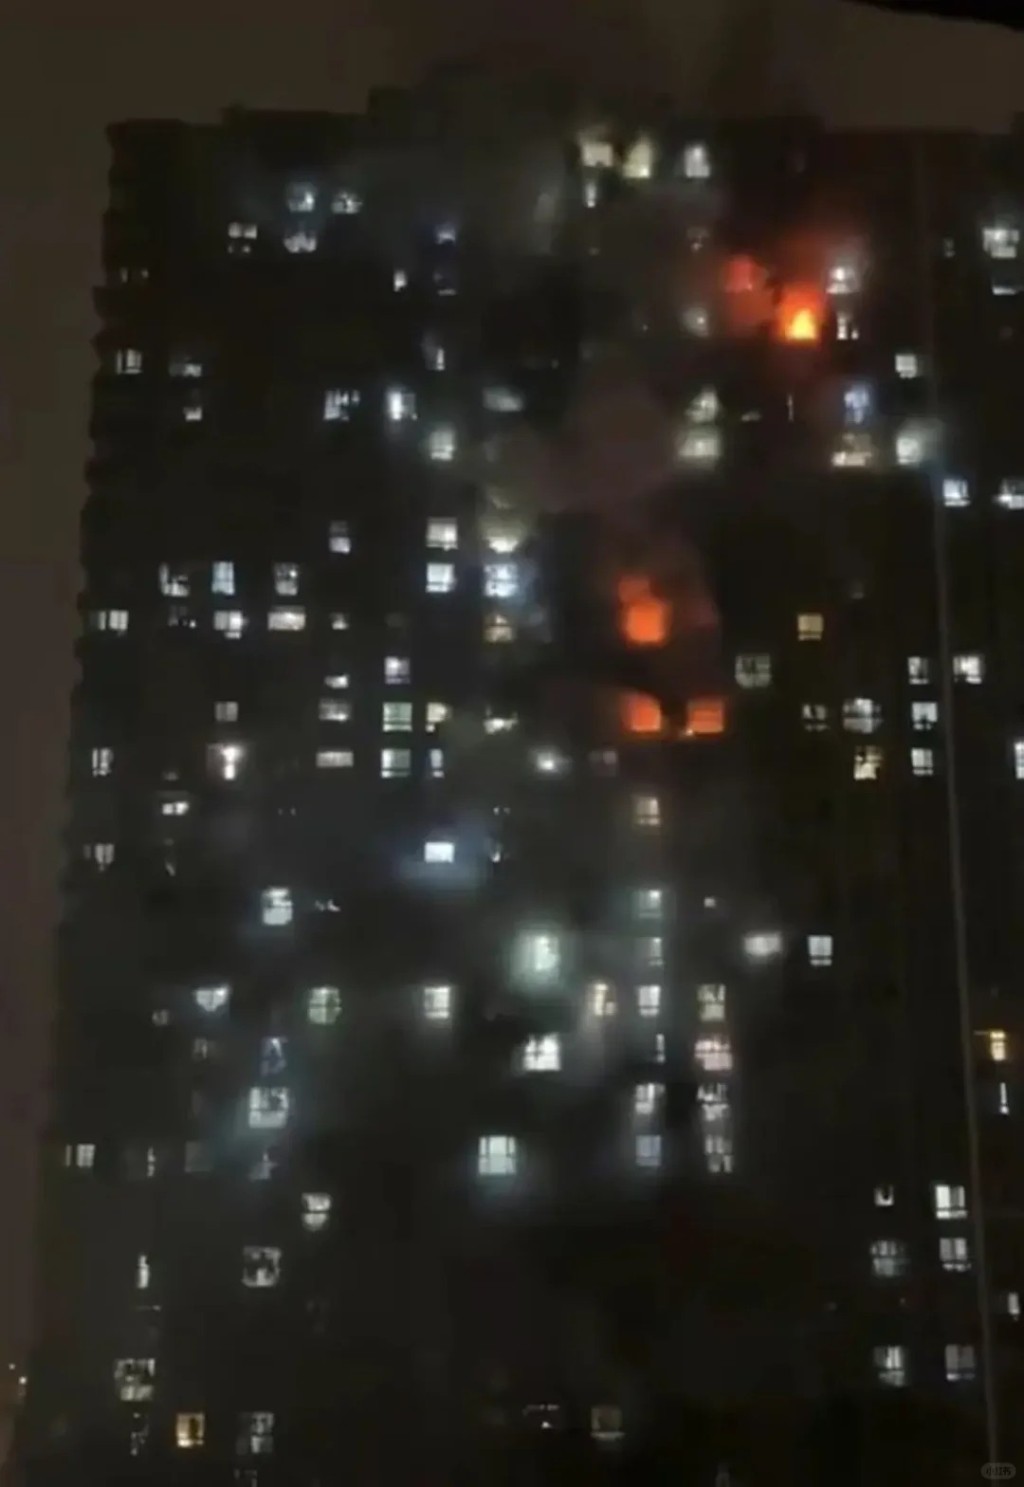 南京一幢34层屋苑23日凌晨发生大火，导致15人死亡。小红书